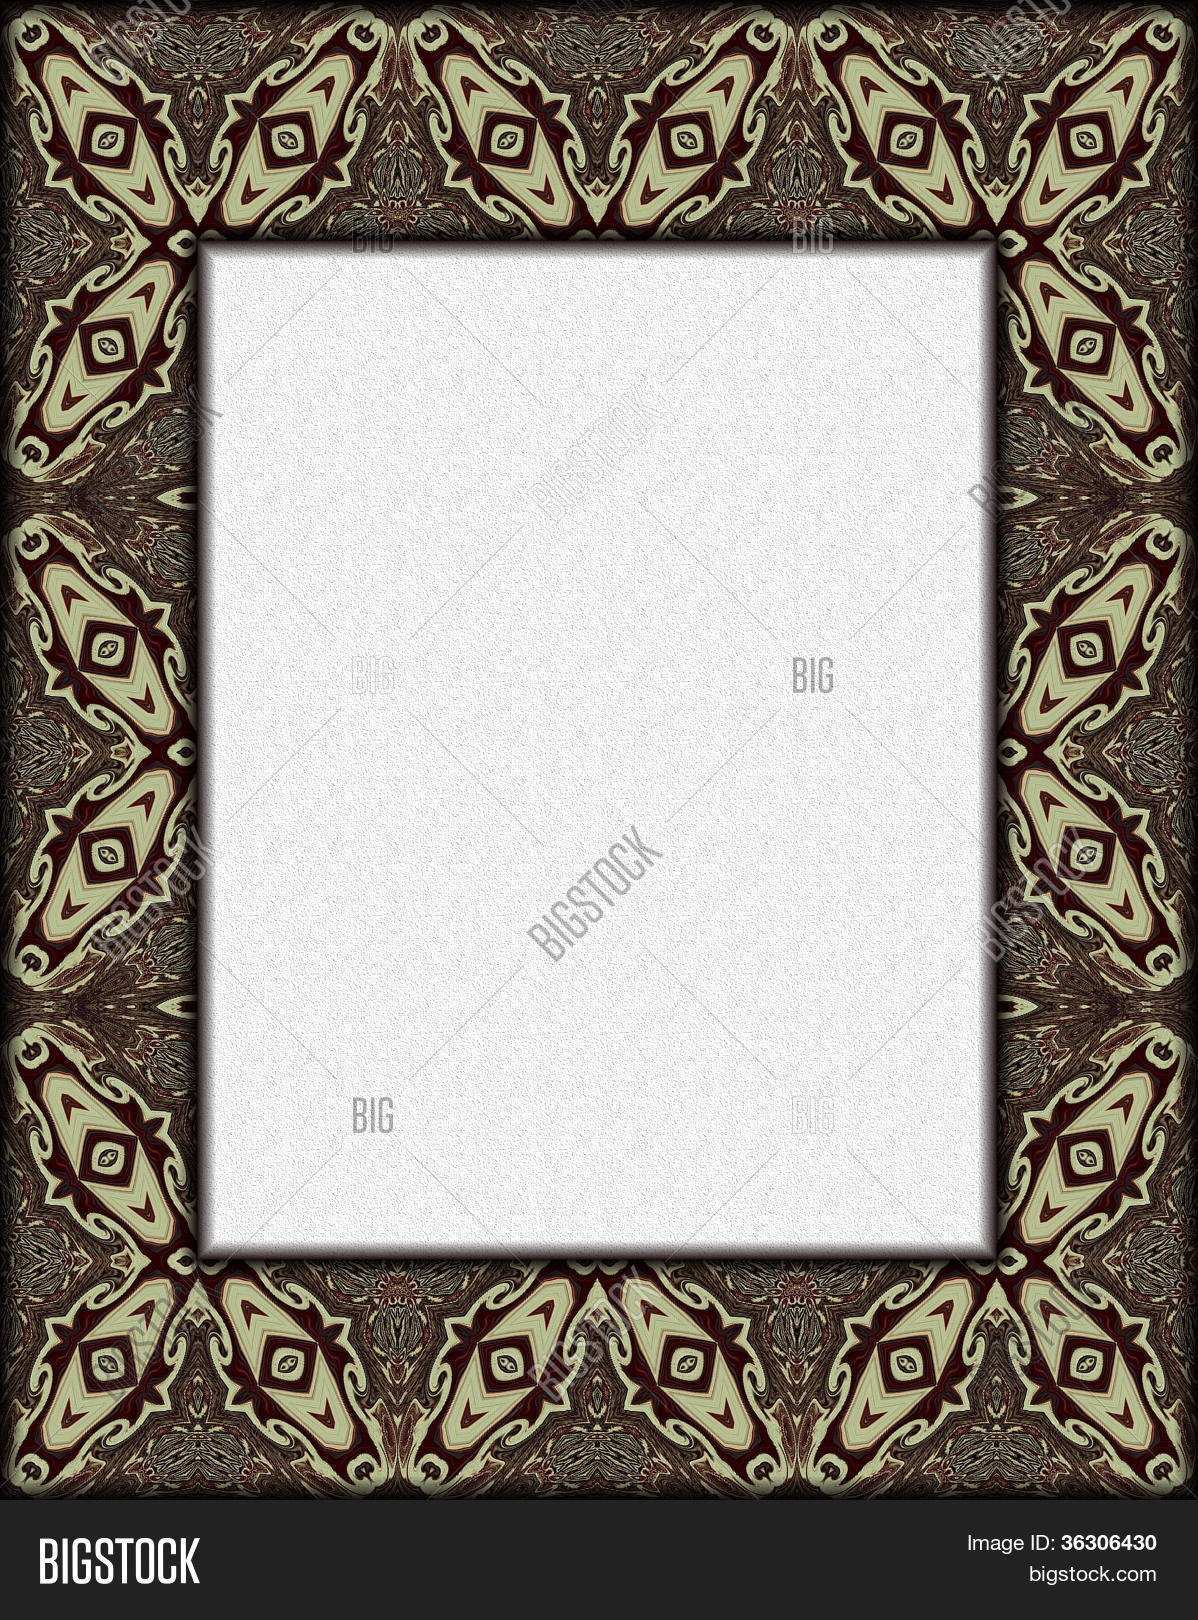 Gambar Border Batik